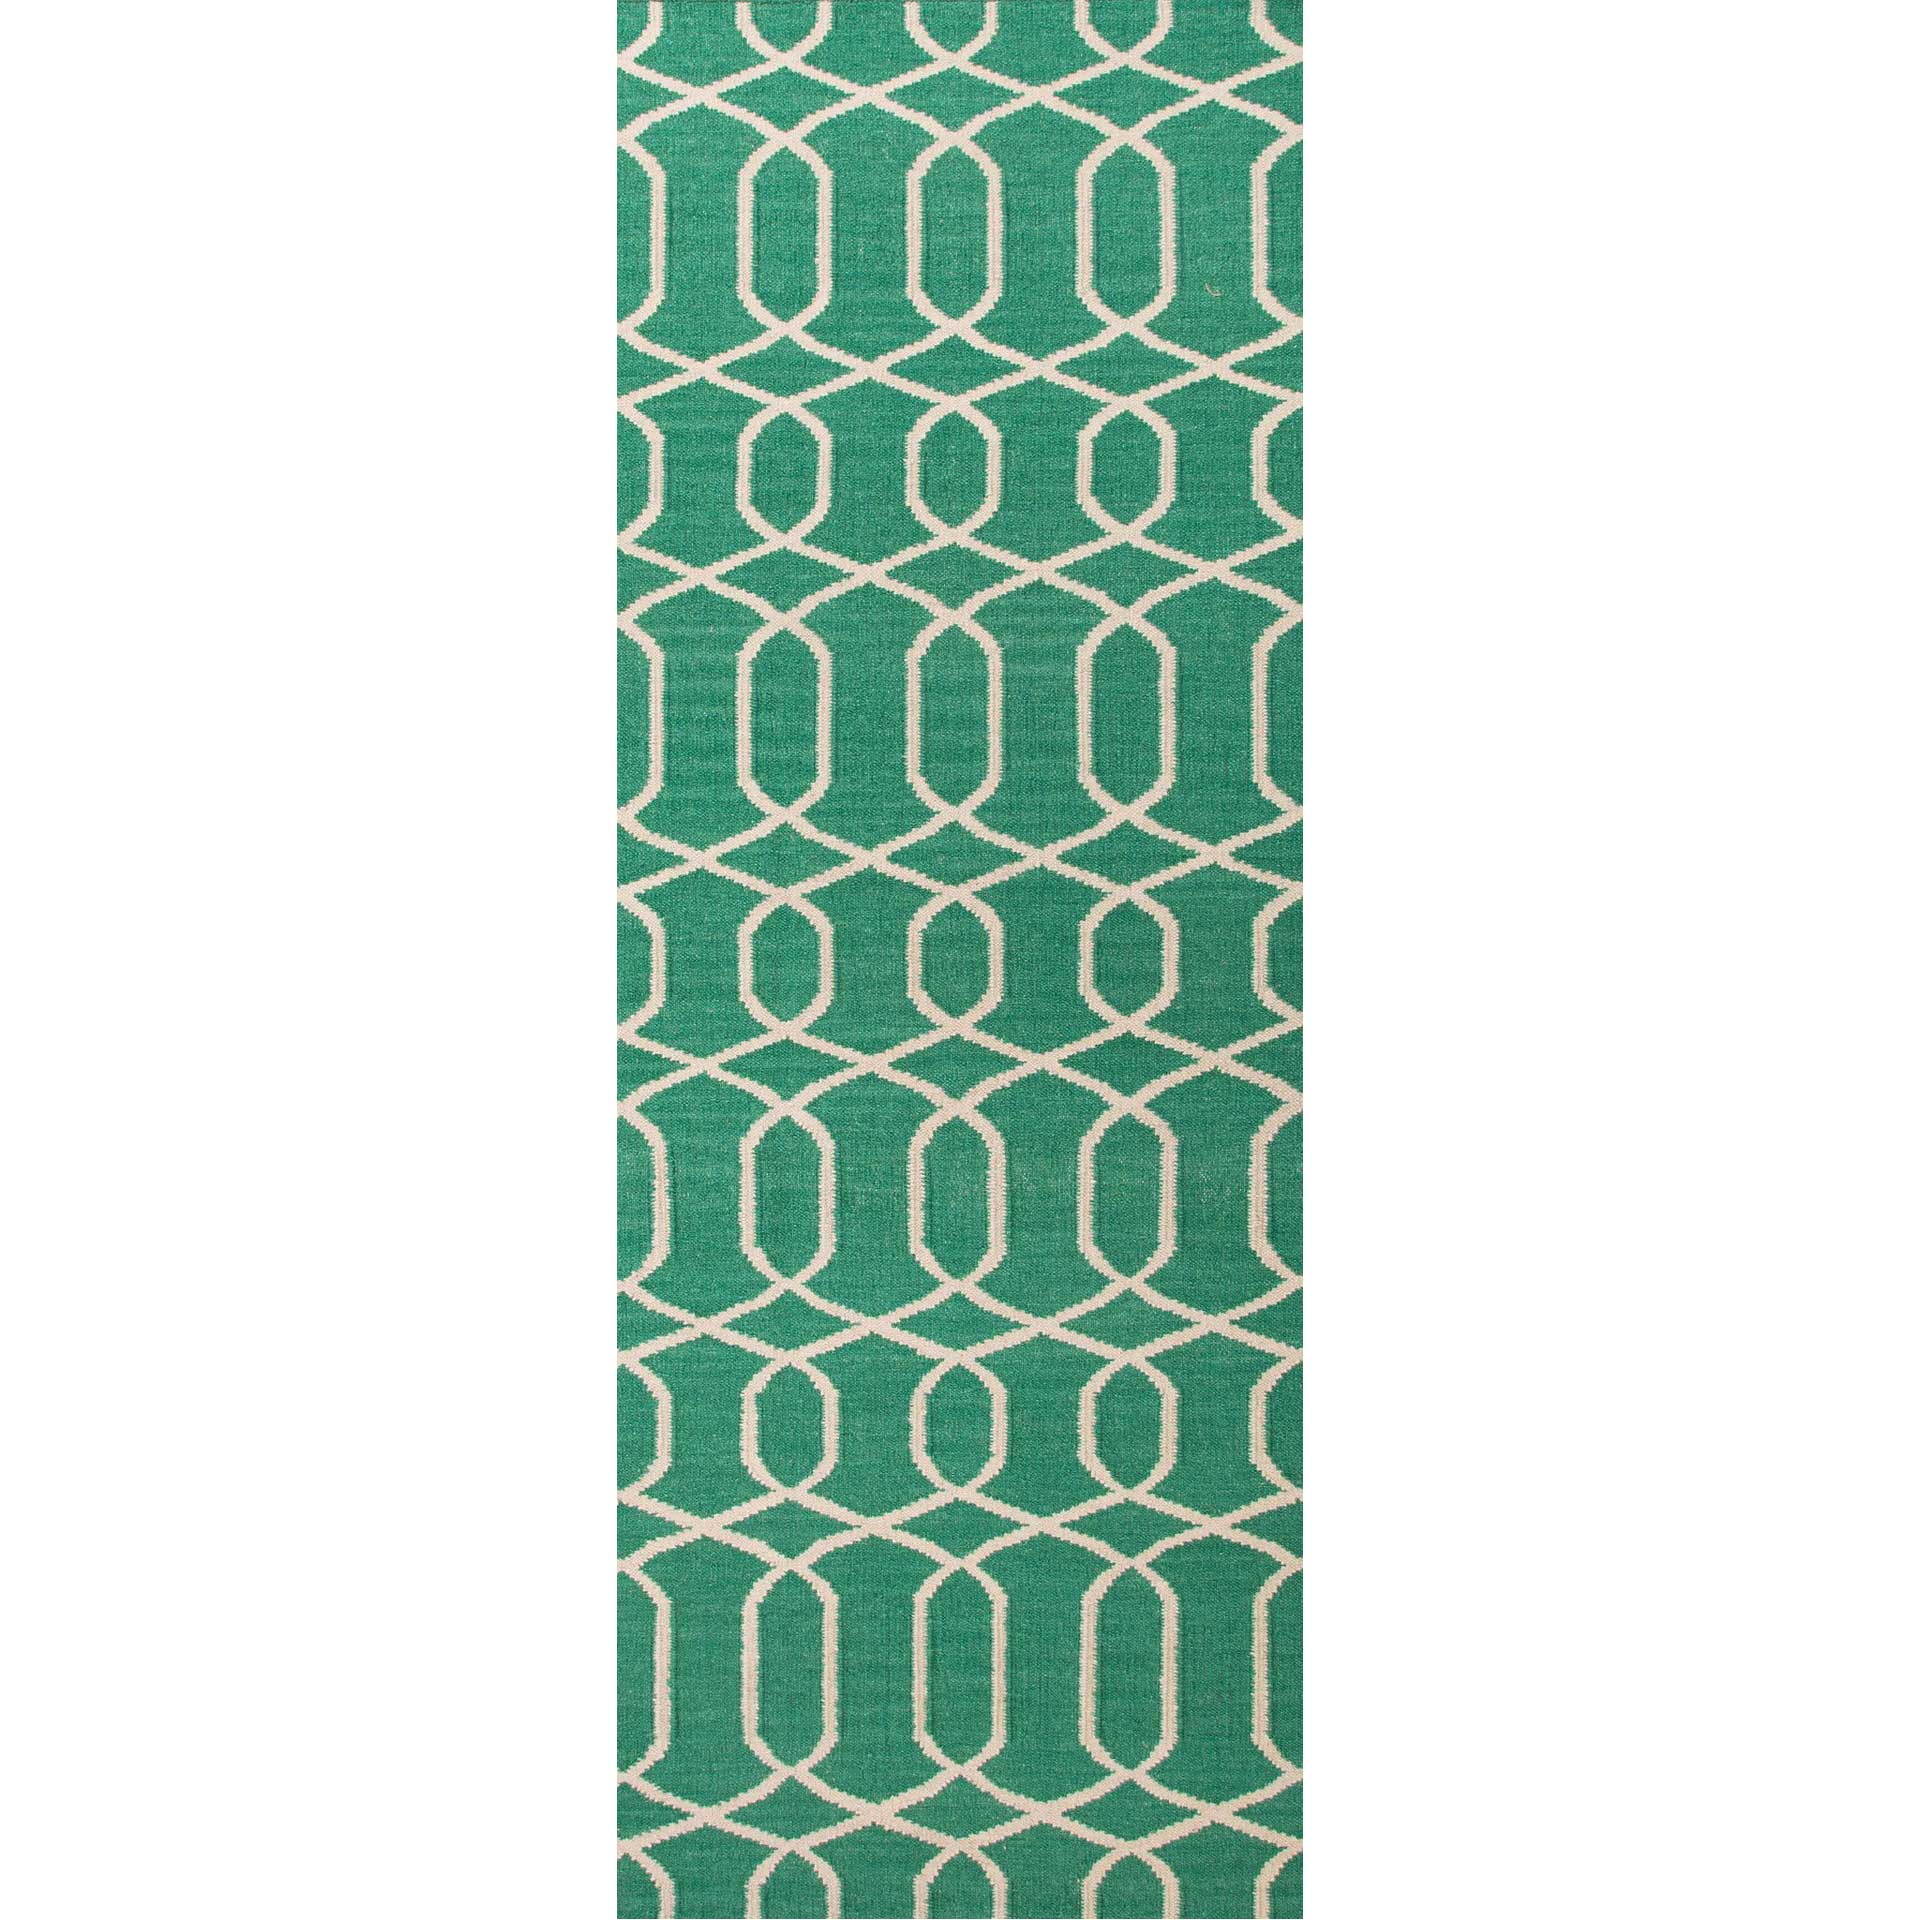 Urban Bungalow Sabrine Emerald Green/Antique White Runner Rug